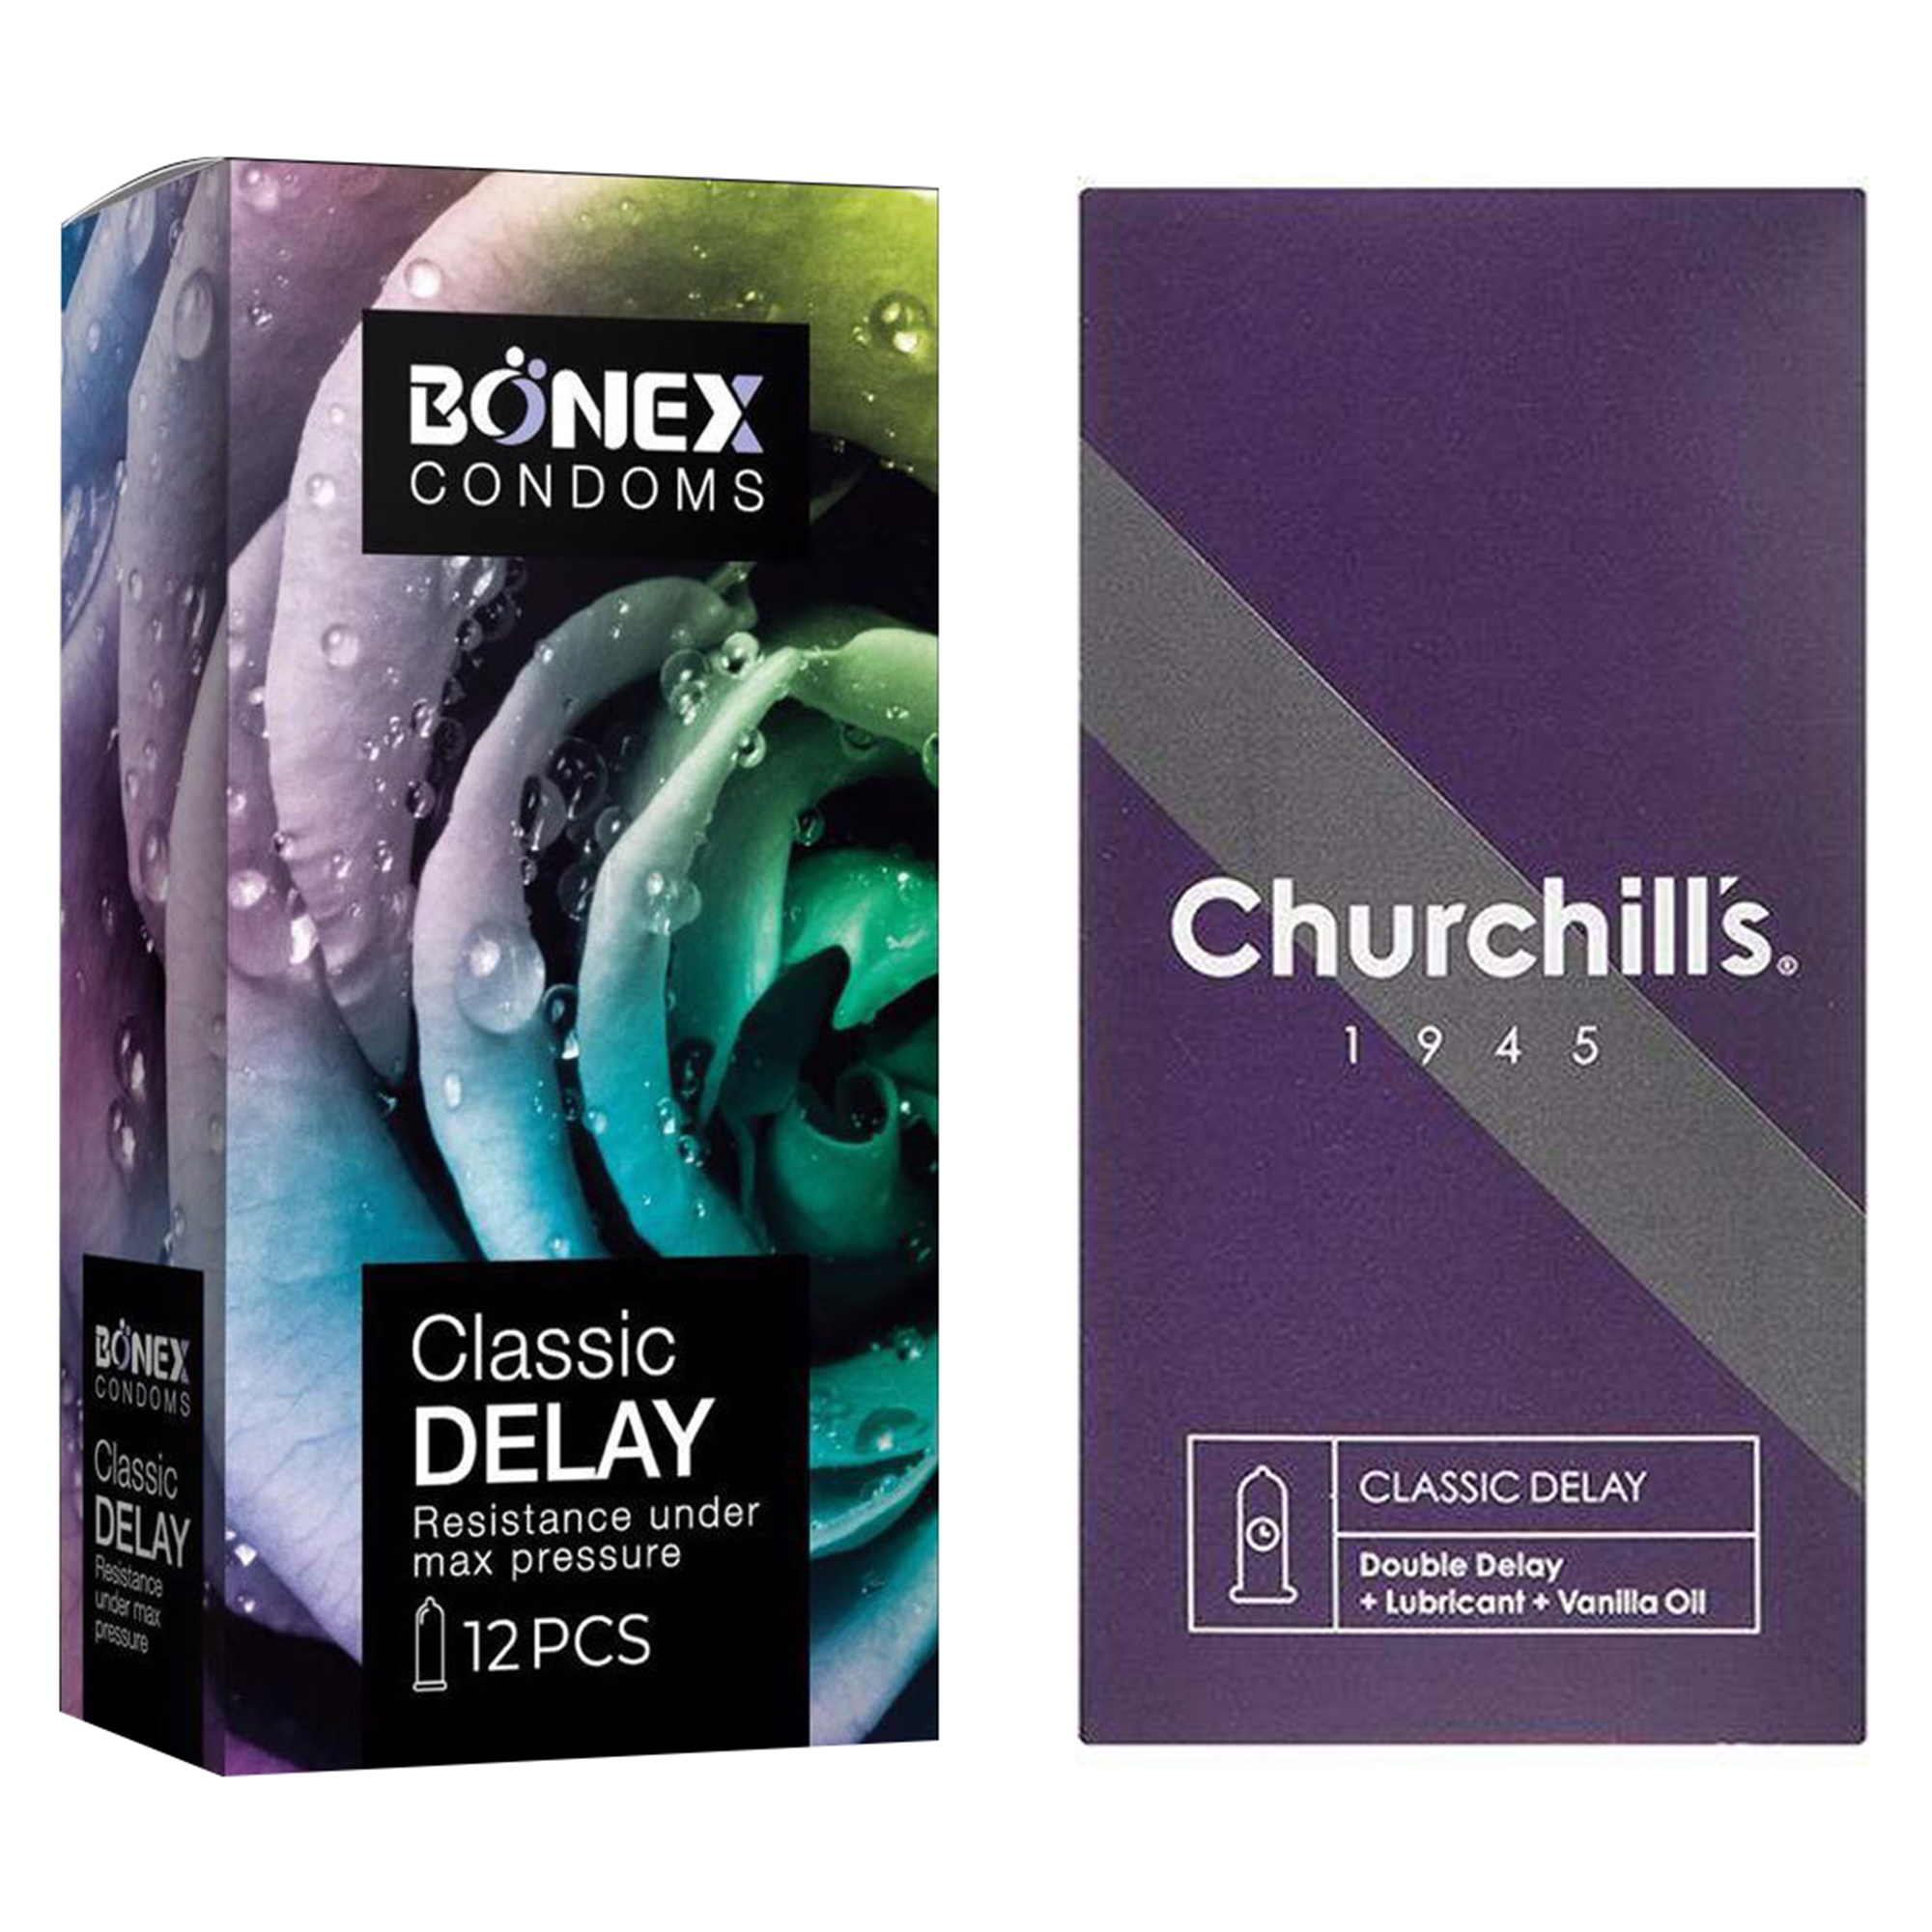 کاندوم چرچیلز مدل Classic Delay بسته 12 عددی به همراه کاندوم بونکس مدل Classic Delay بسته 12 عددی 